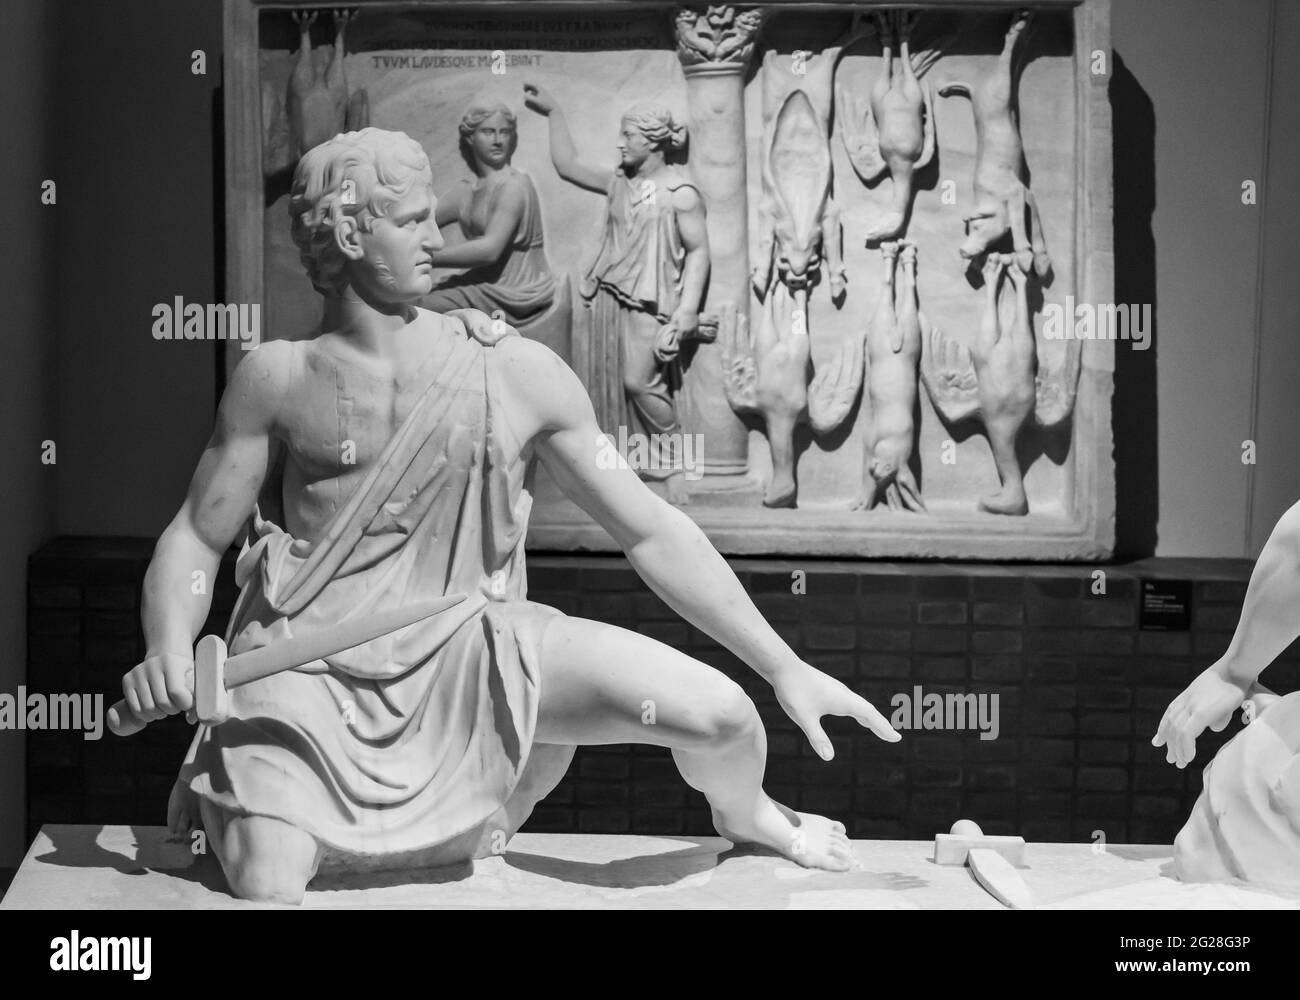 Foto in bianco e nero di antiche sculture ornamentali romane in marmo all'interno di un museo in Italia Foto Stock